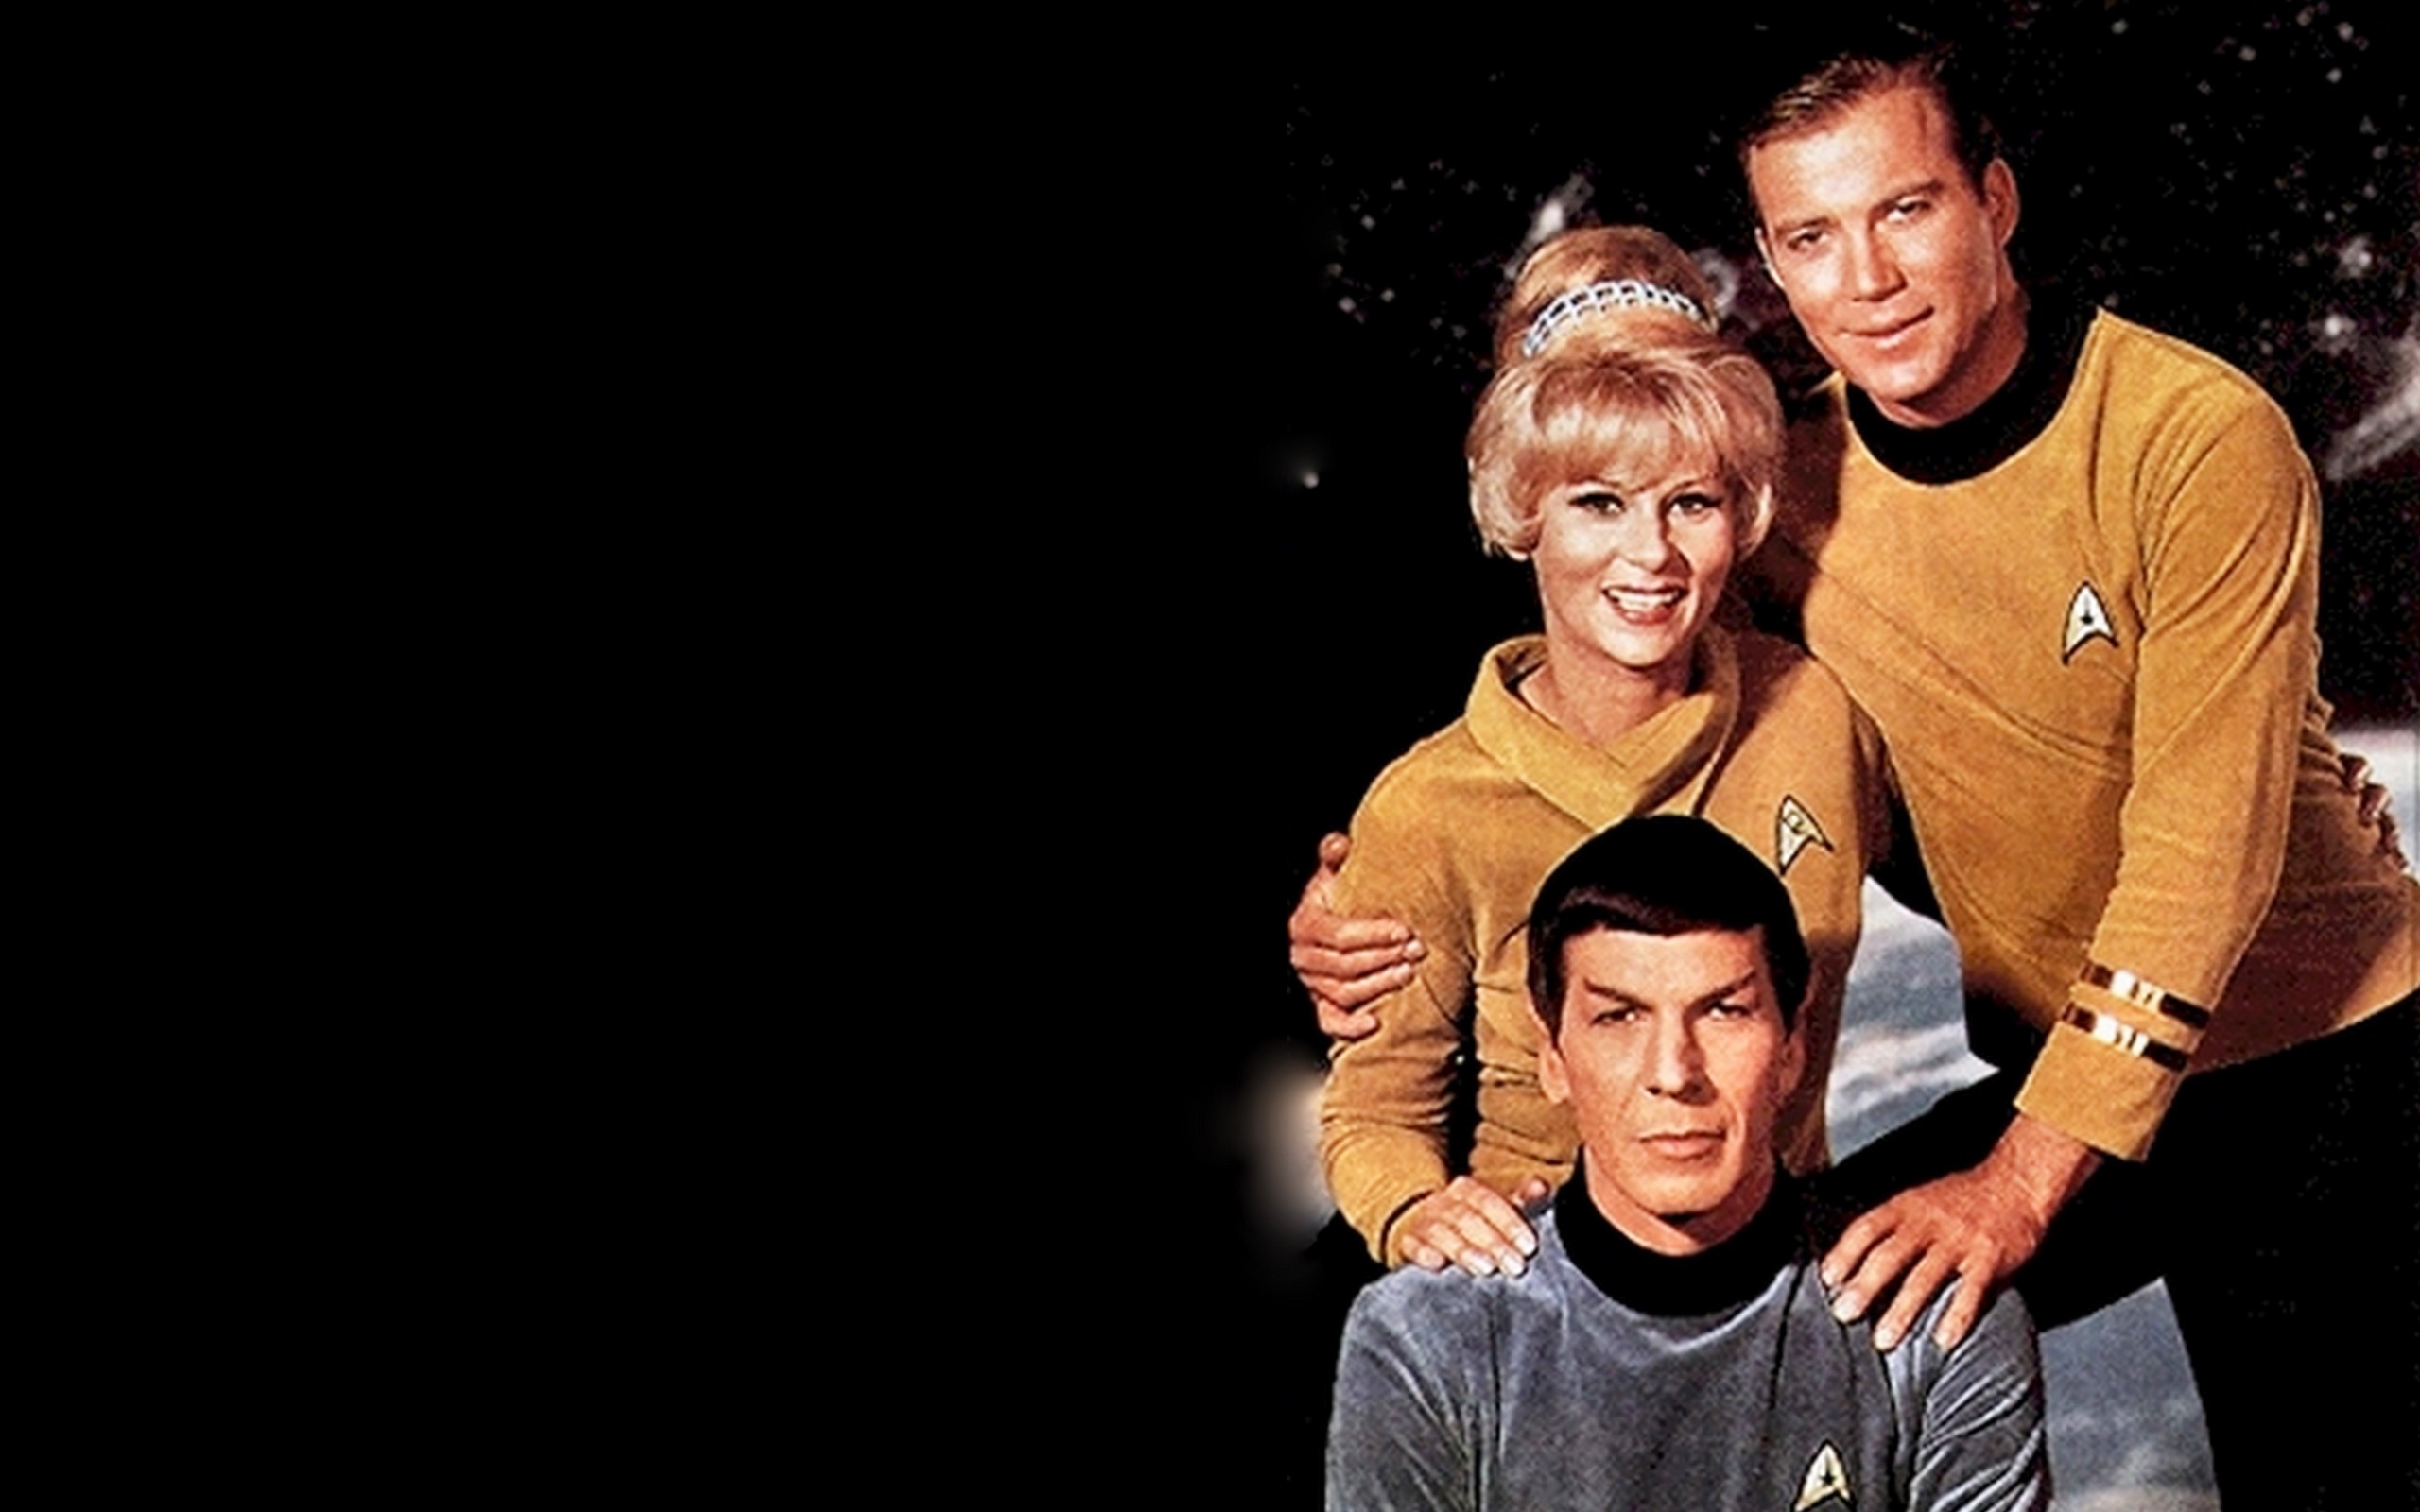 Star Trek The Original Series Image Tos HD Wallpaper And